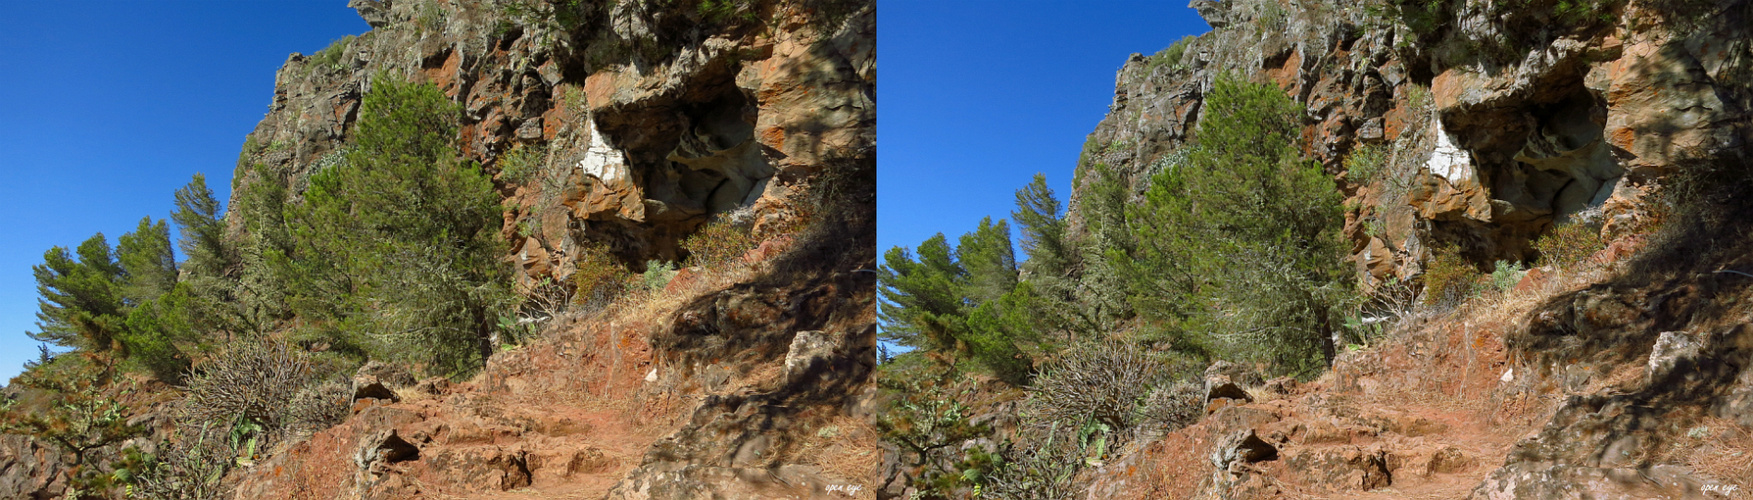 Arure Wanderweg La Gomera Kanaren Spanien - 3D Kreuzblick